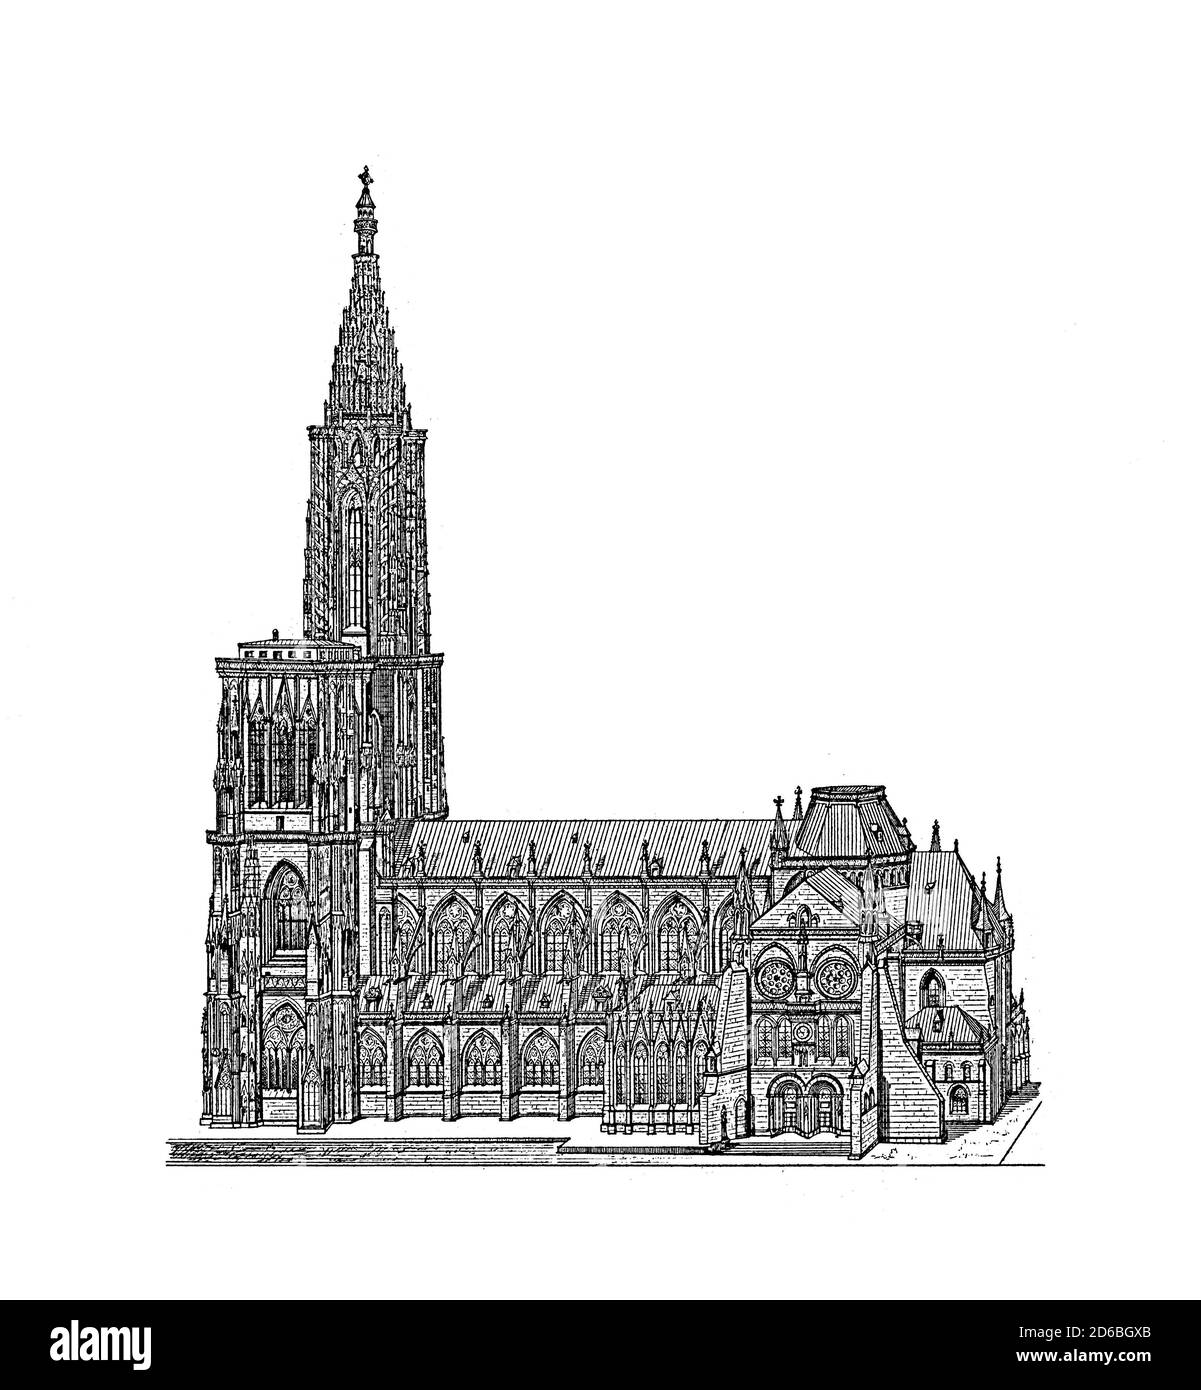 Illustration ancienne de la cathédrale de Strasbourg datant du XIXe siècle. Gravure publiée dans Vergleichende Architektonische Formenlehre par Carl Scholtze, Leipzig Banque D'Images